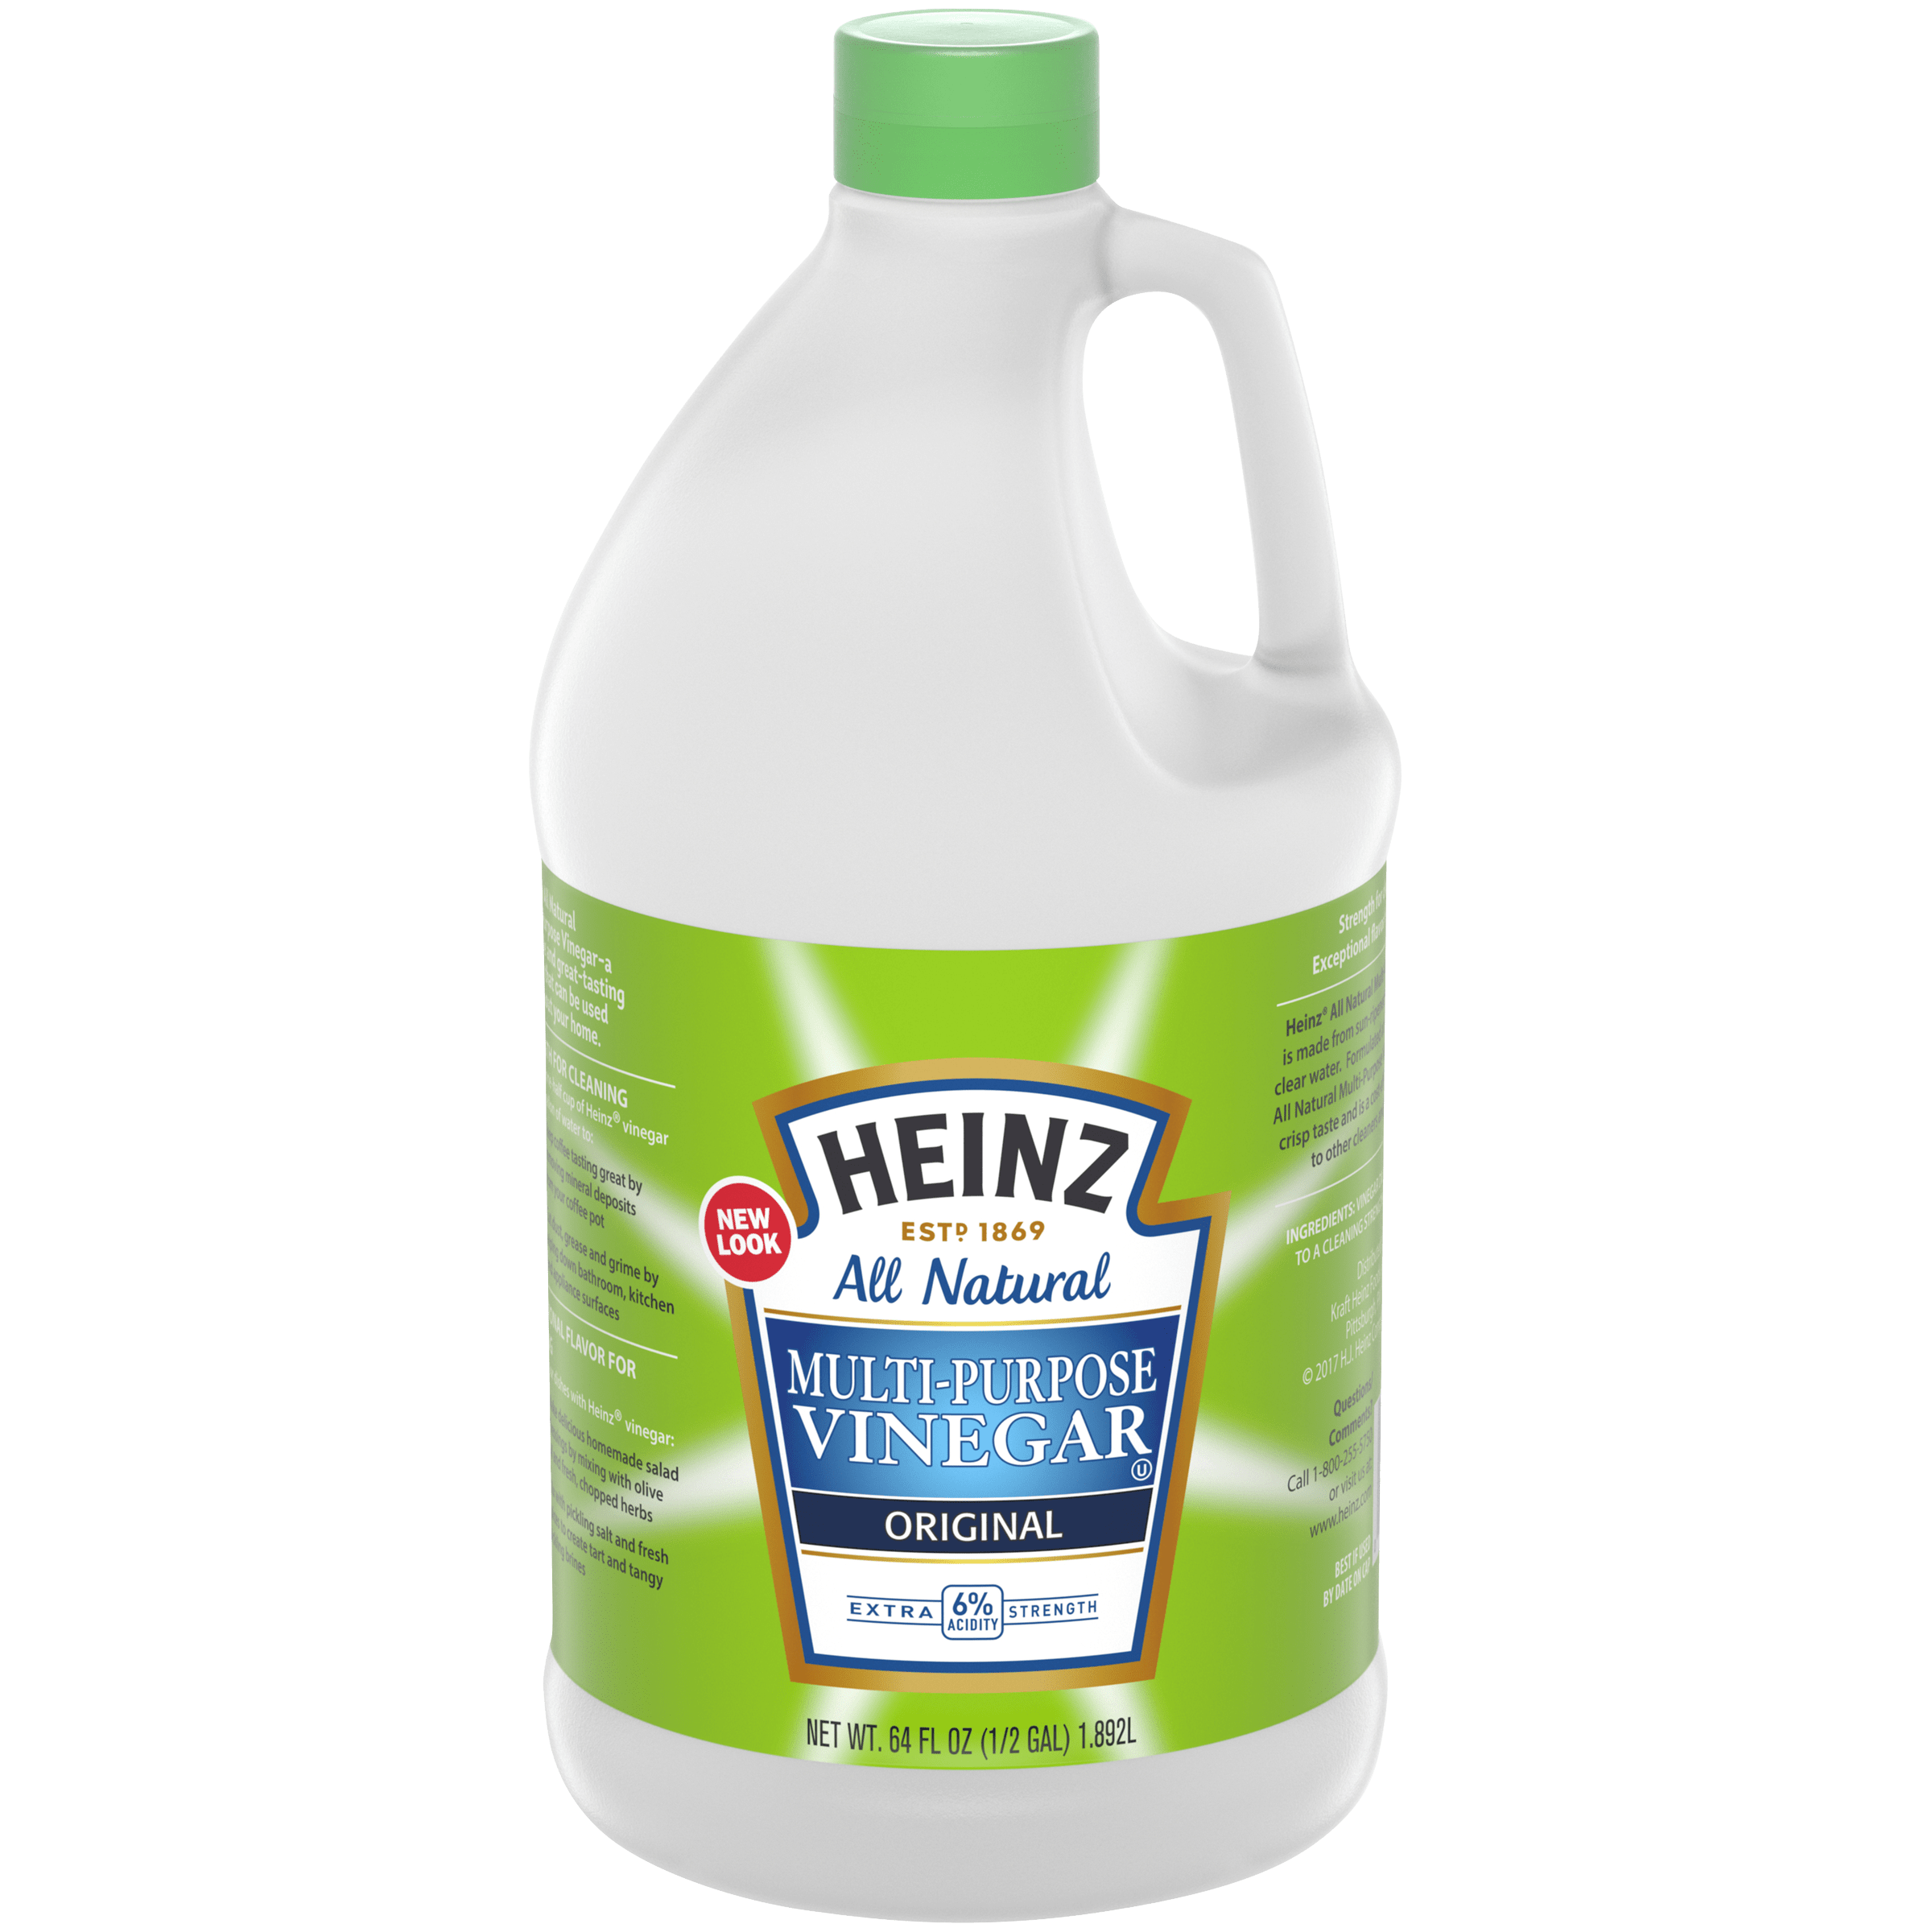 Original Multi-Purpose Extra Strength Vinegar with 6% Acidity